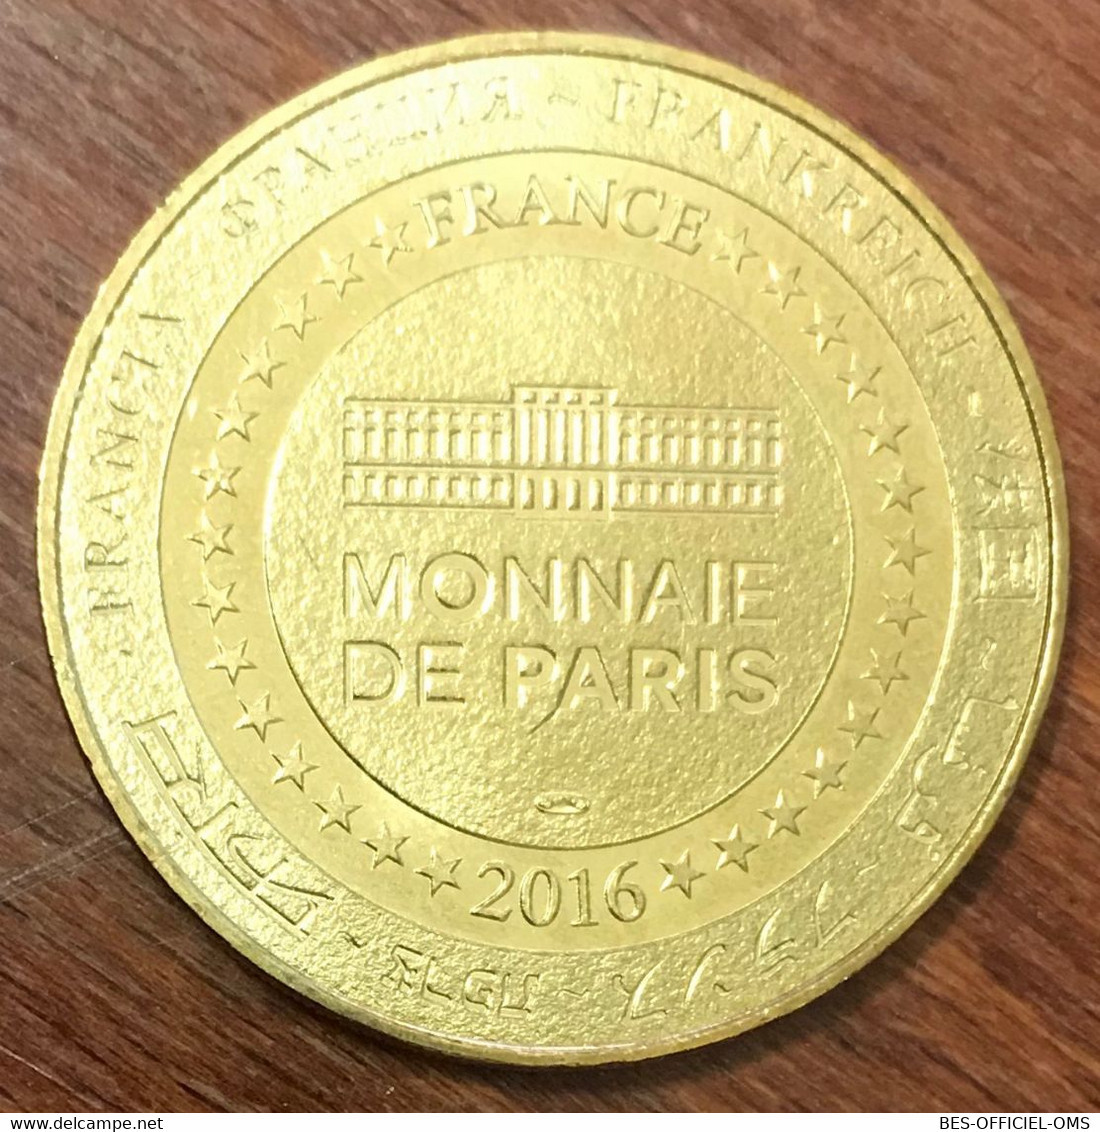 29 BREST OCÉANOPOLIS TÊTE DE PHOQUE MDP 2016 MÉDAILLE MONNAIE DE PARIS JETON TOURISTIQUE MEDALS COINS TOKENS - 2016